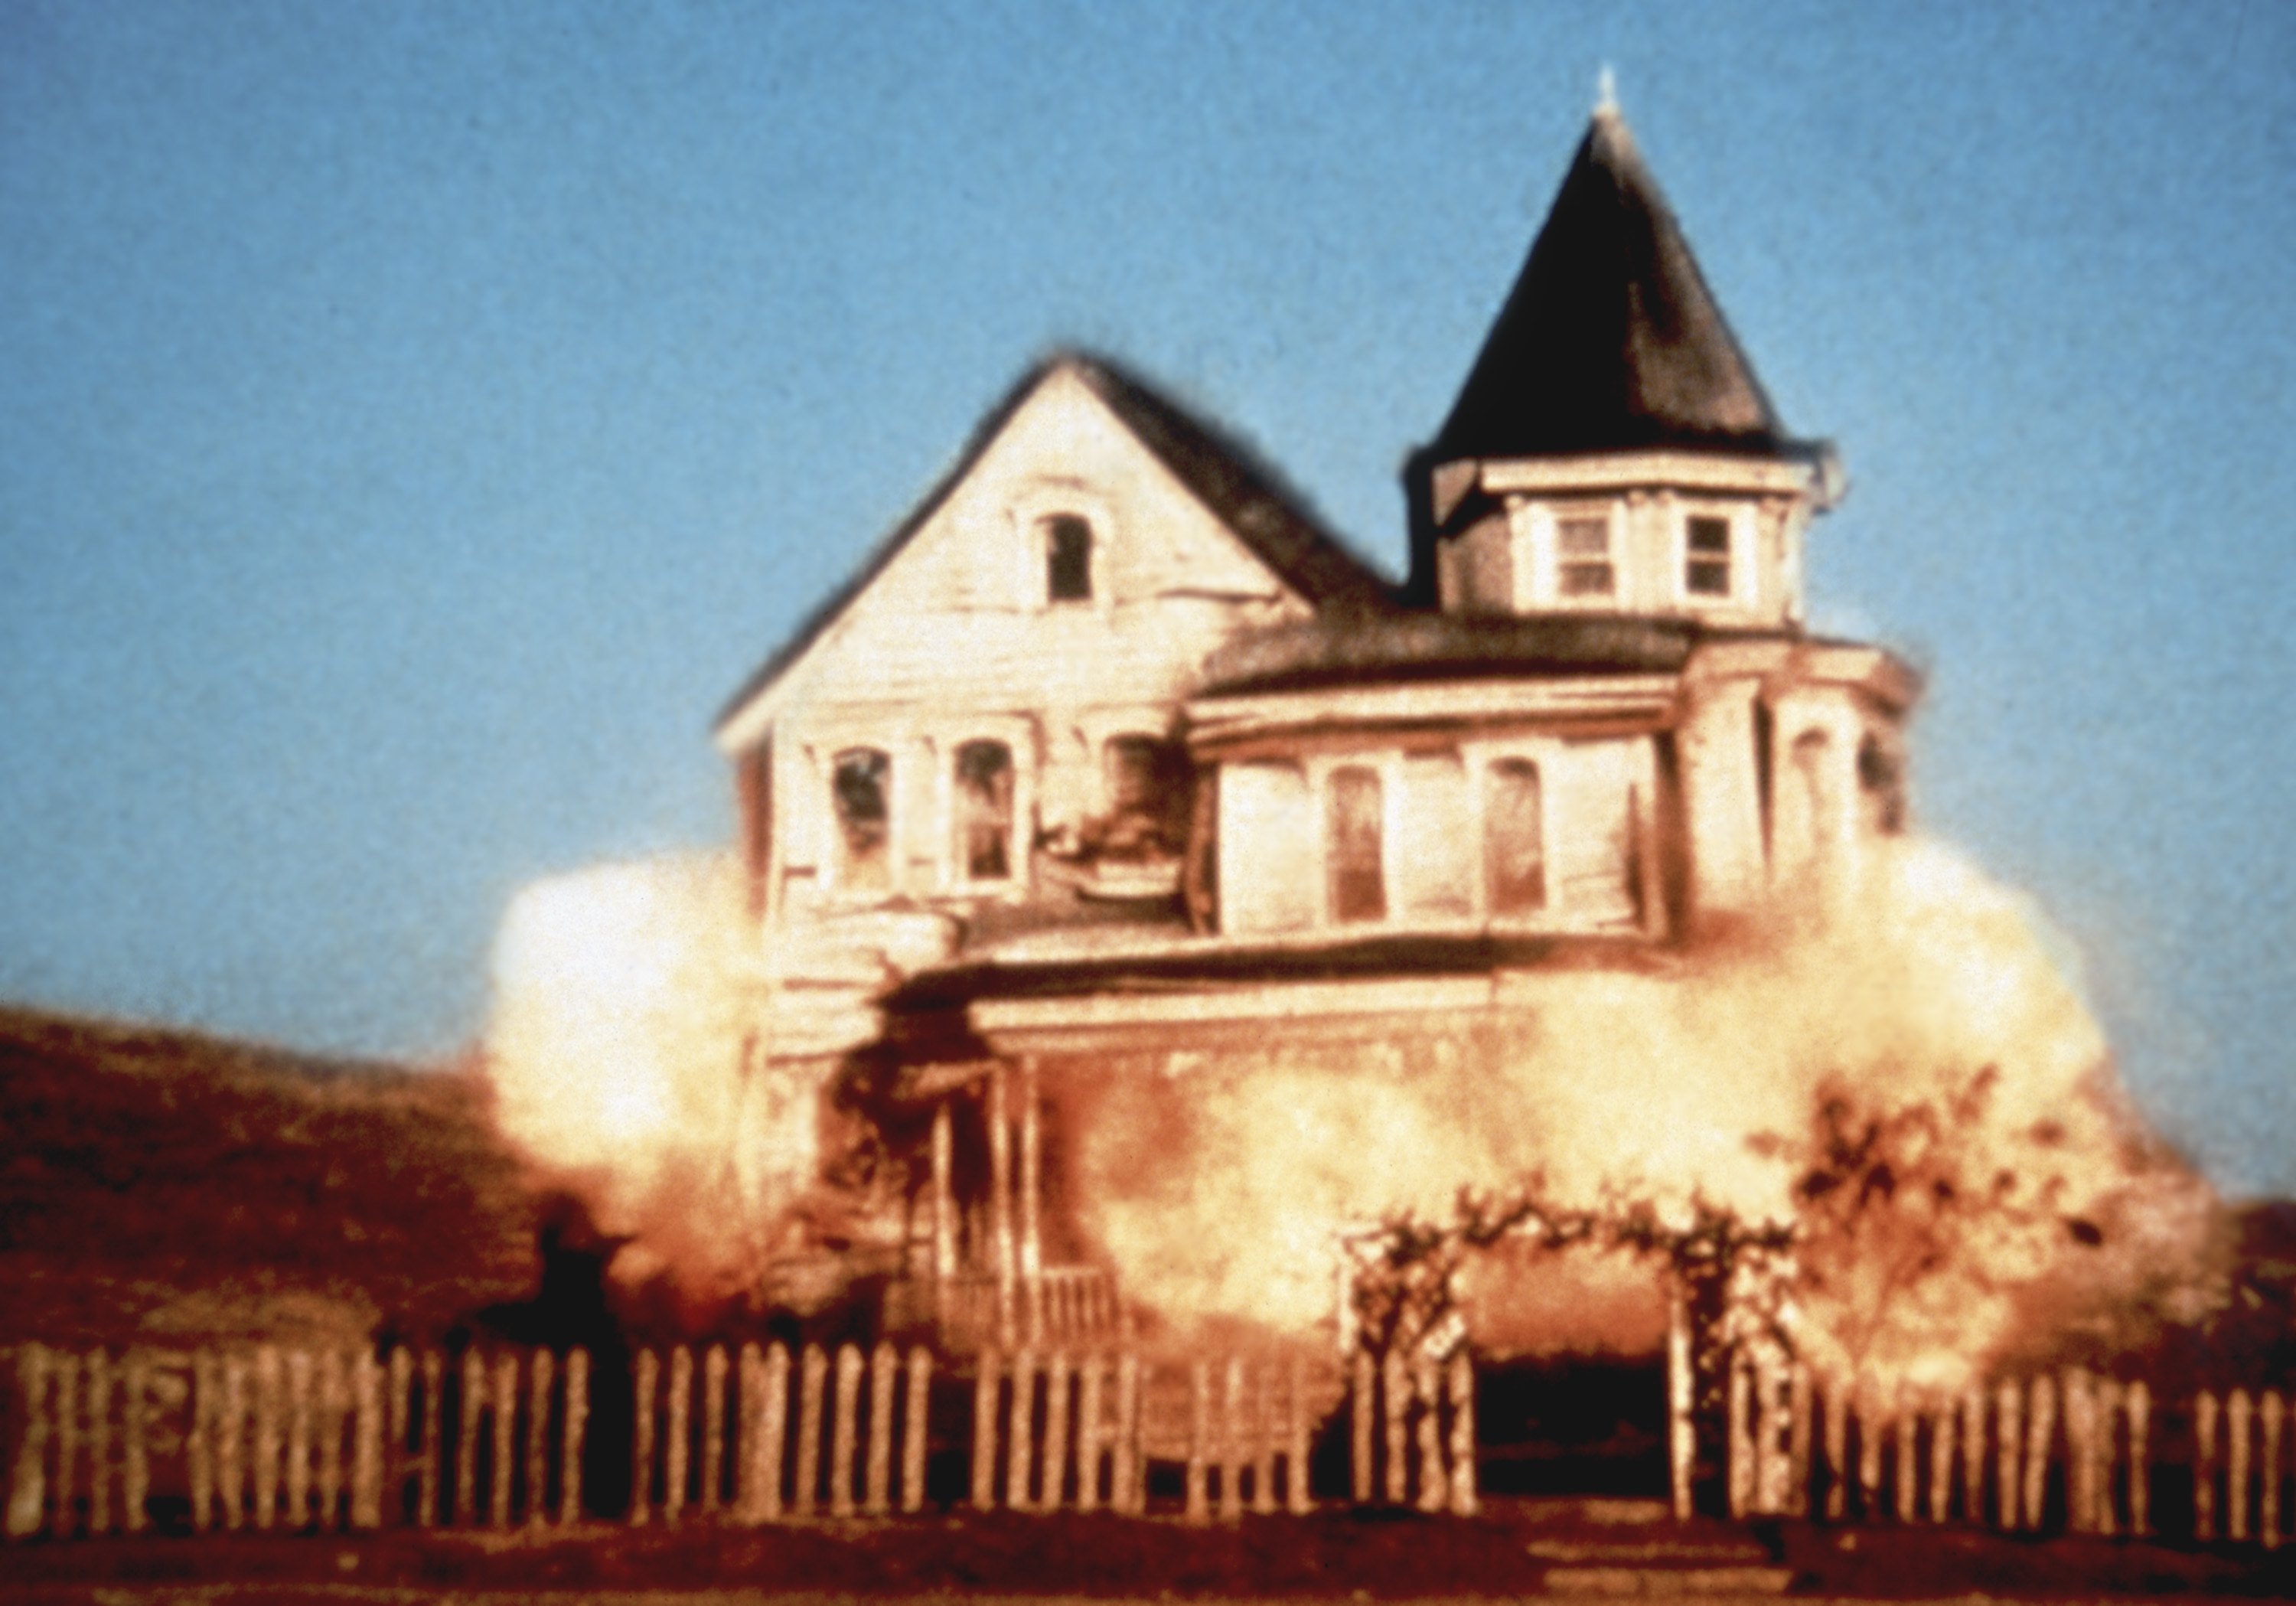 'Little House on the Prairie' -- 'The Last Farewell' explosion